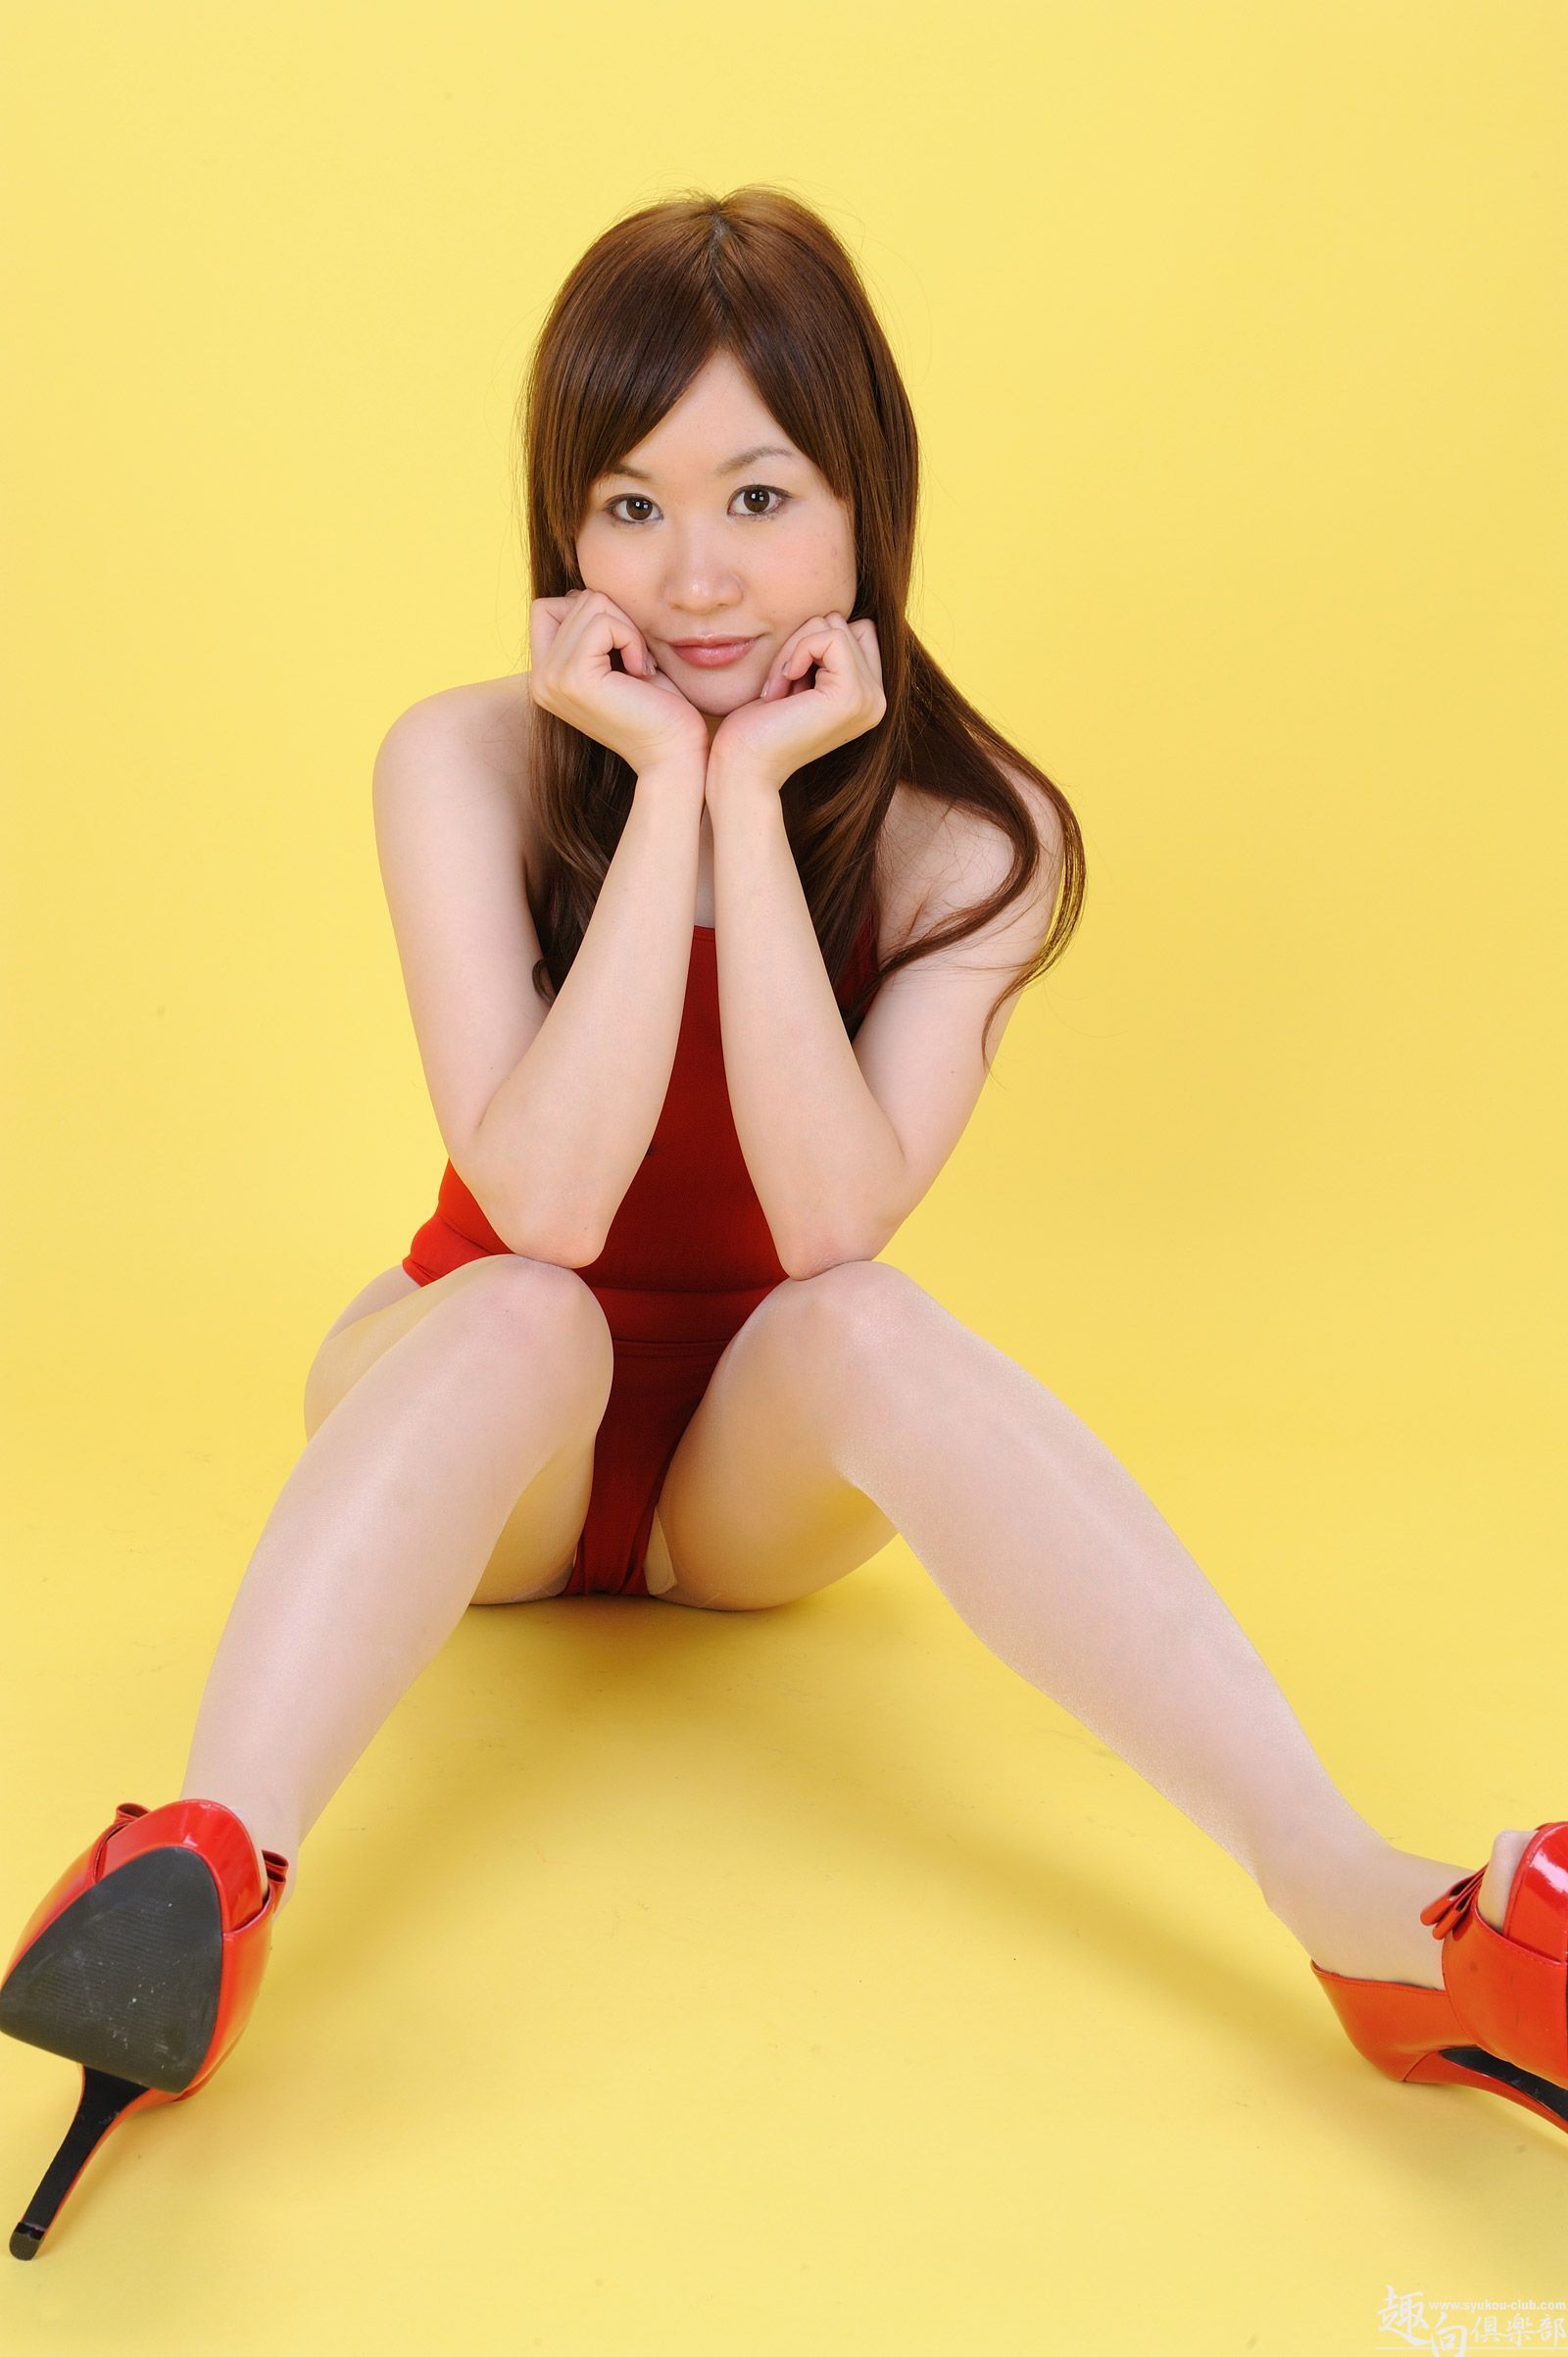 [syukou club] photo of Japanese silk stockings uniform